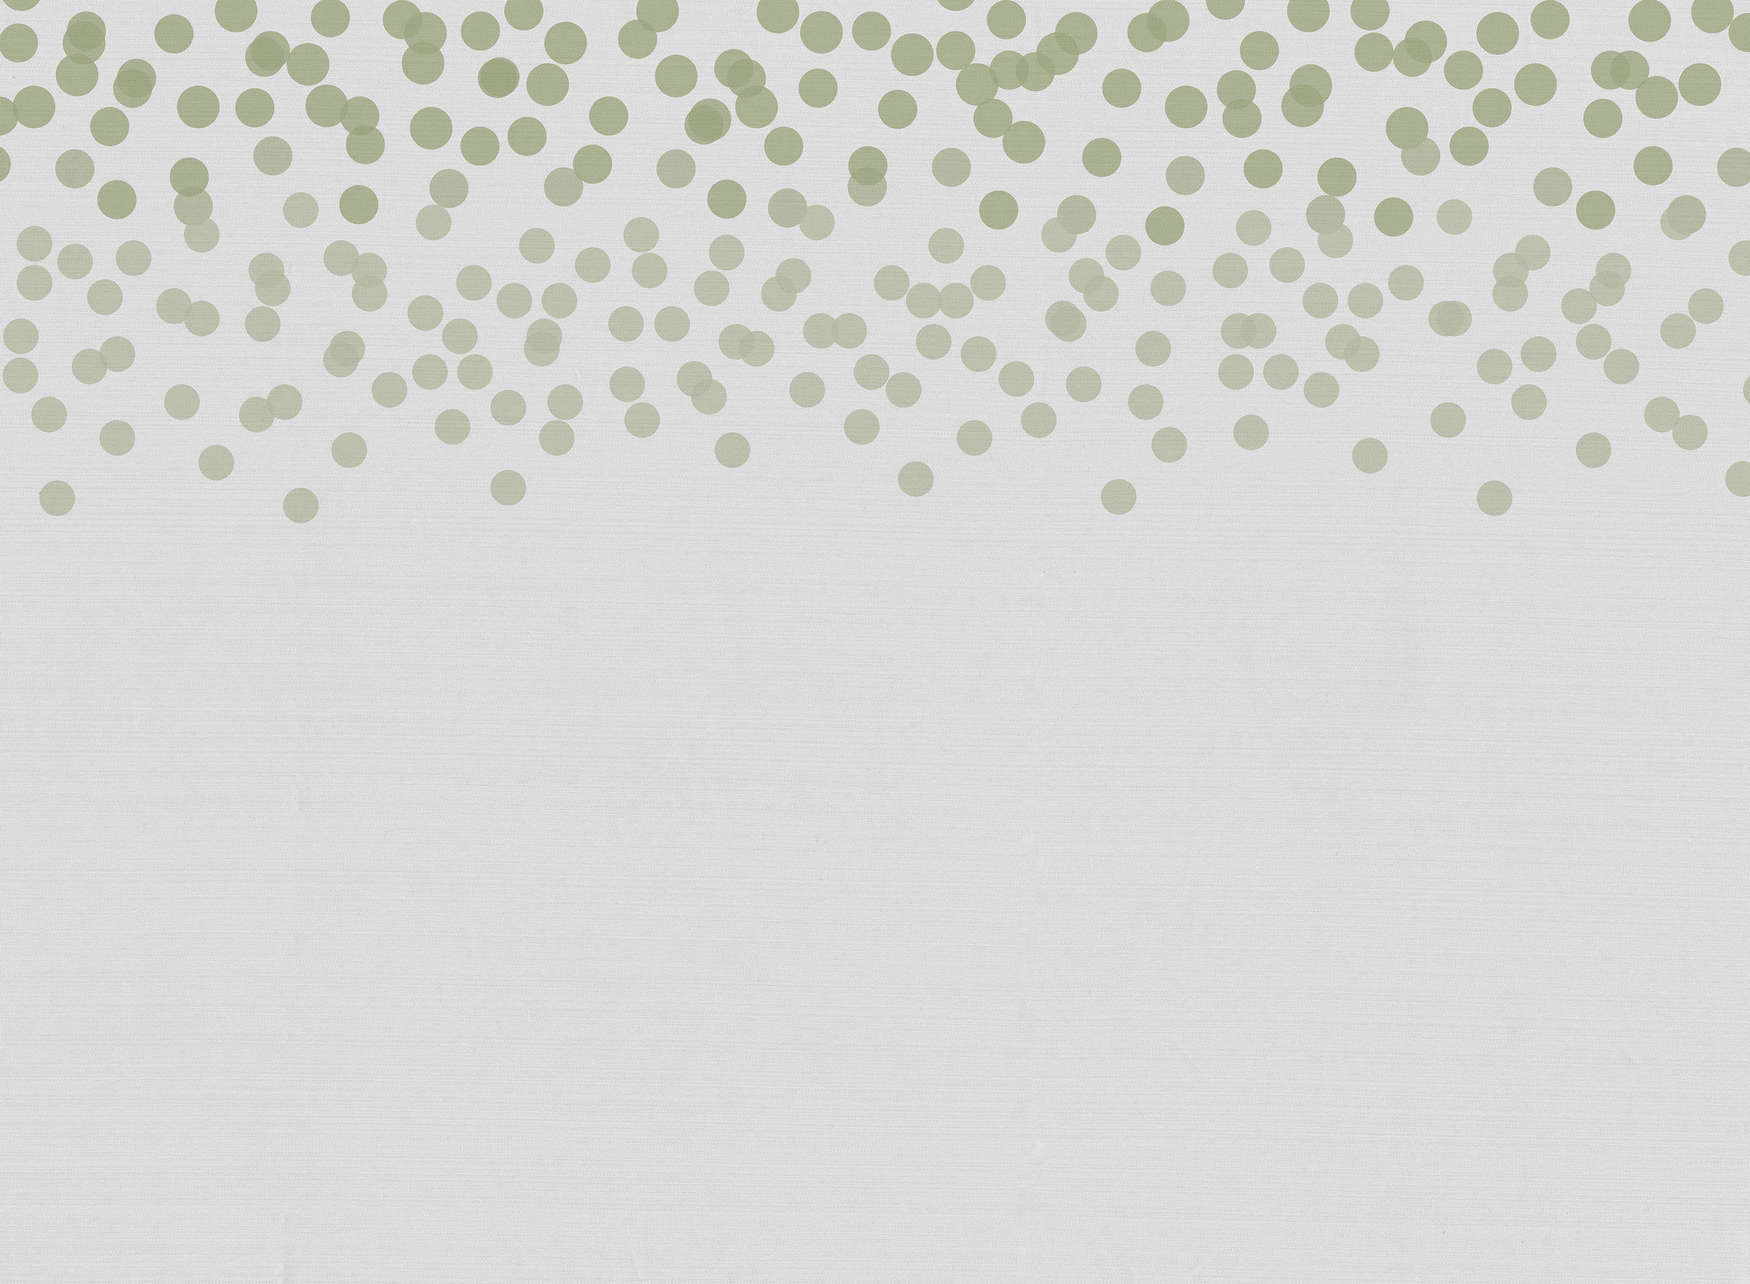             Papel pintado fotográfico con un discreto diseño de puntos - Verde, Gris
        